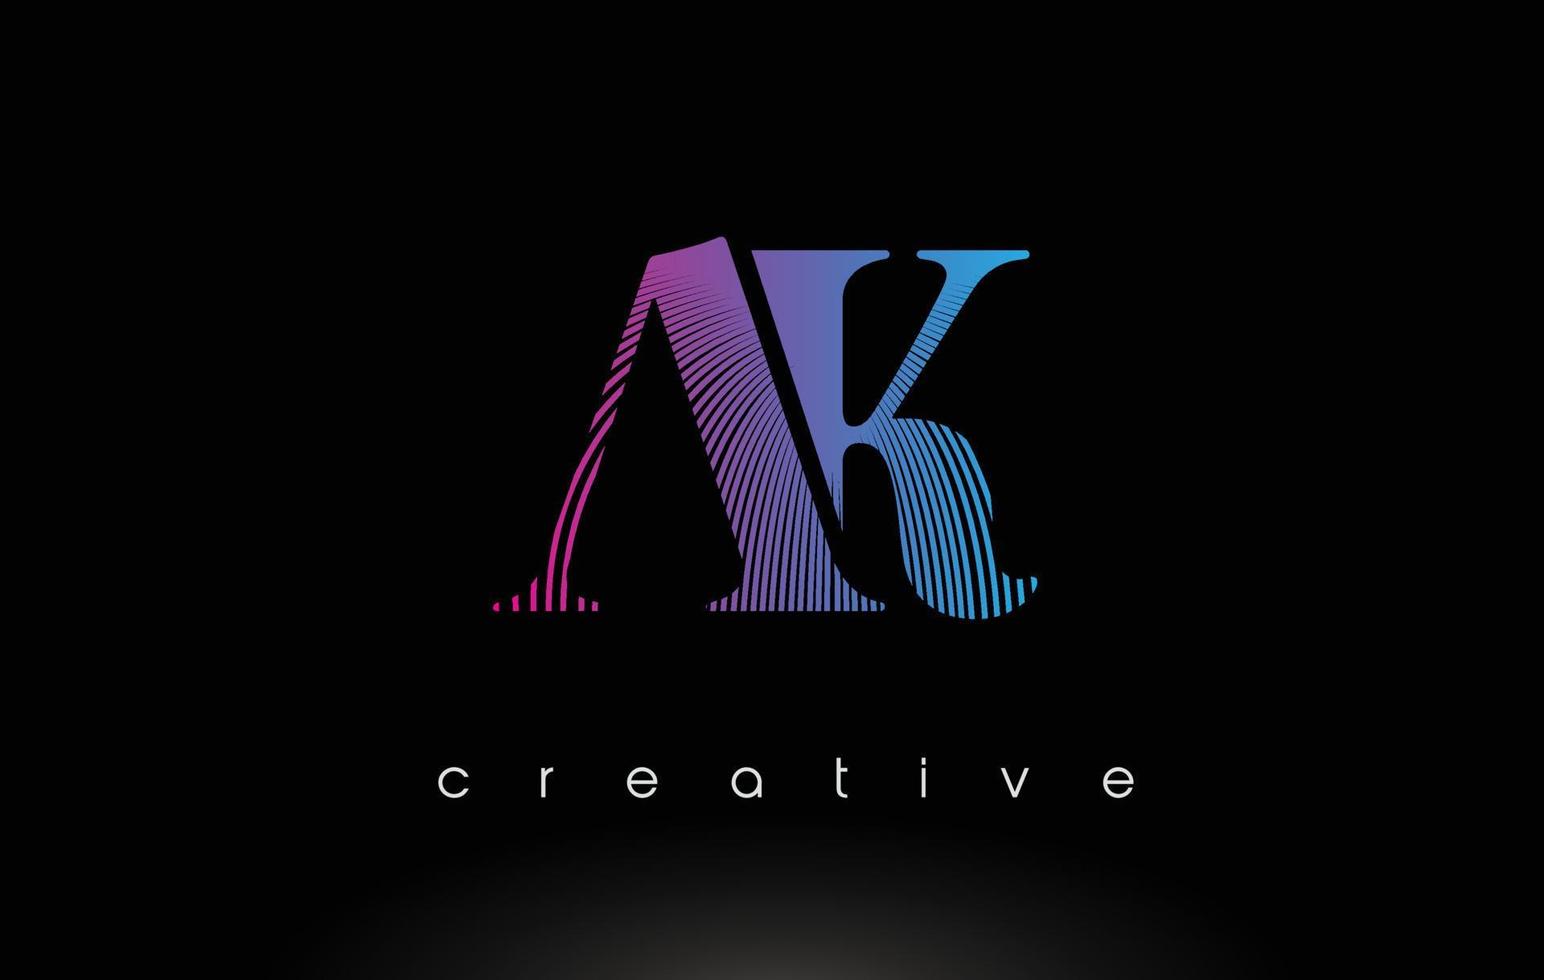 ak-logo-ontwerp met meerdere lijnen en paarsblauwe kleuren. vector